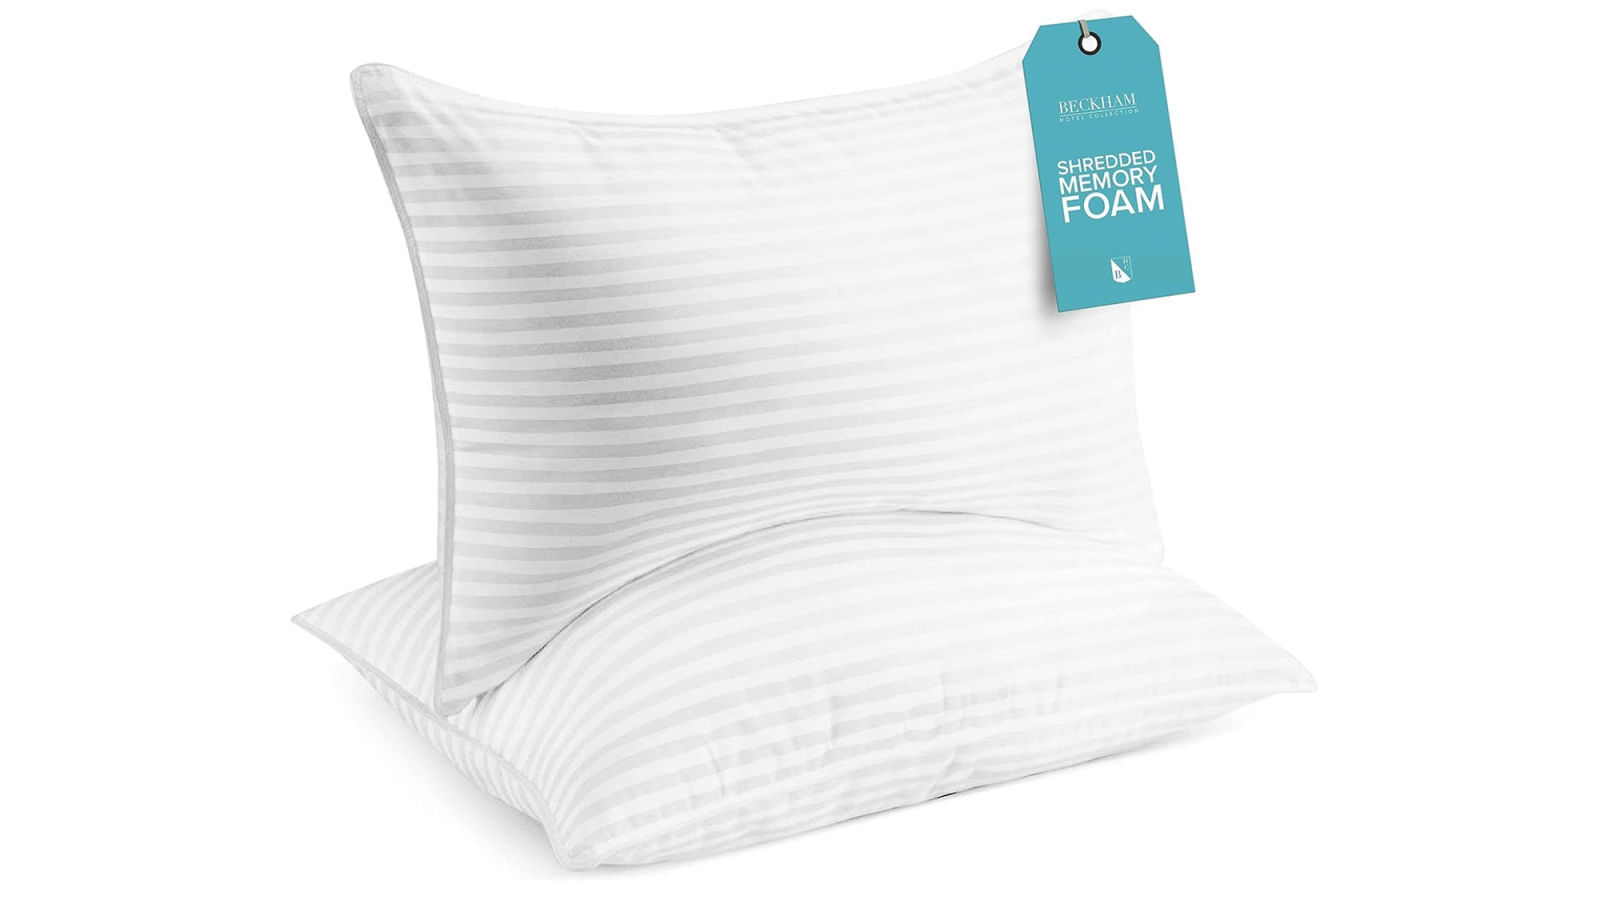 Beckham Hotel Collection Queen/Standard Size Memory Foam Bed Pillows